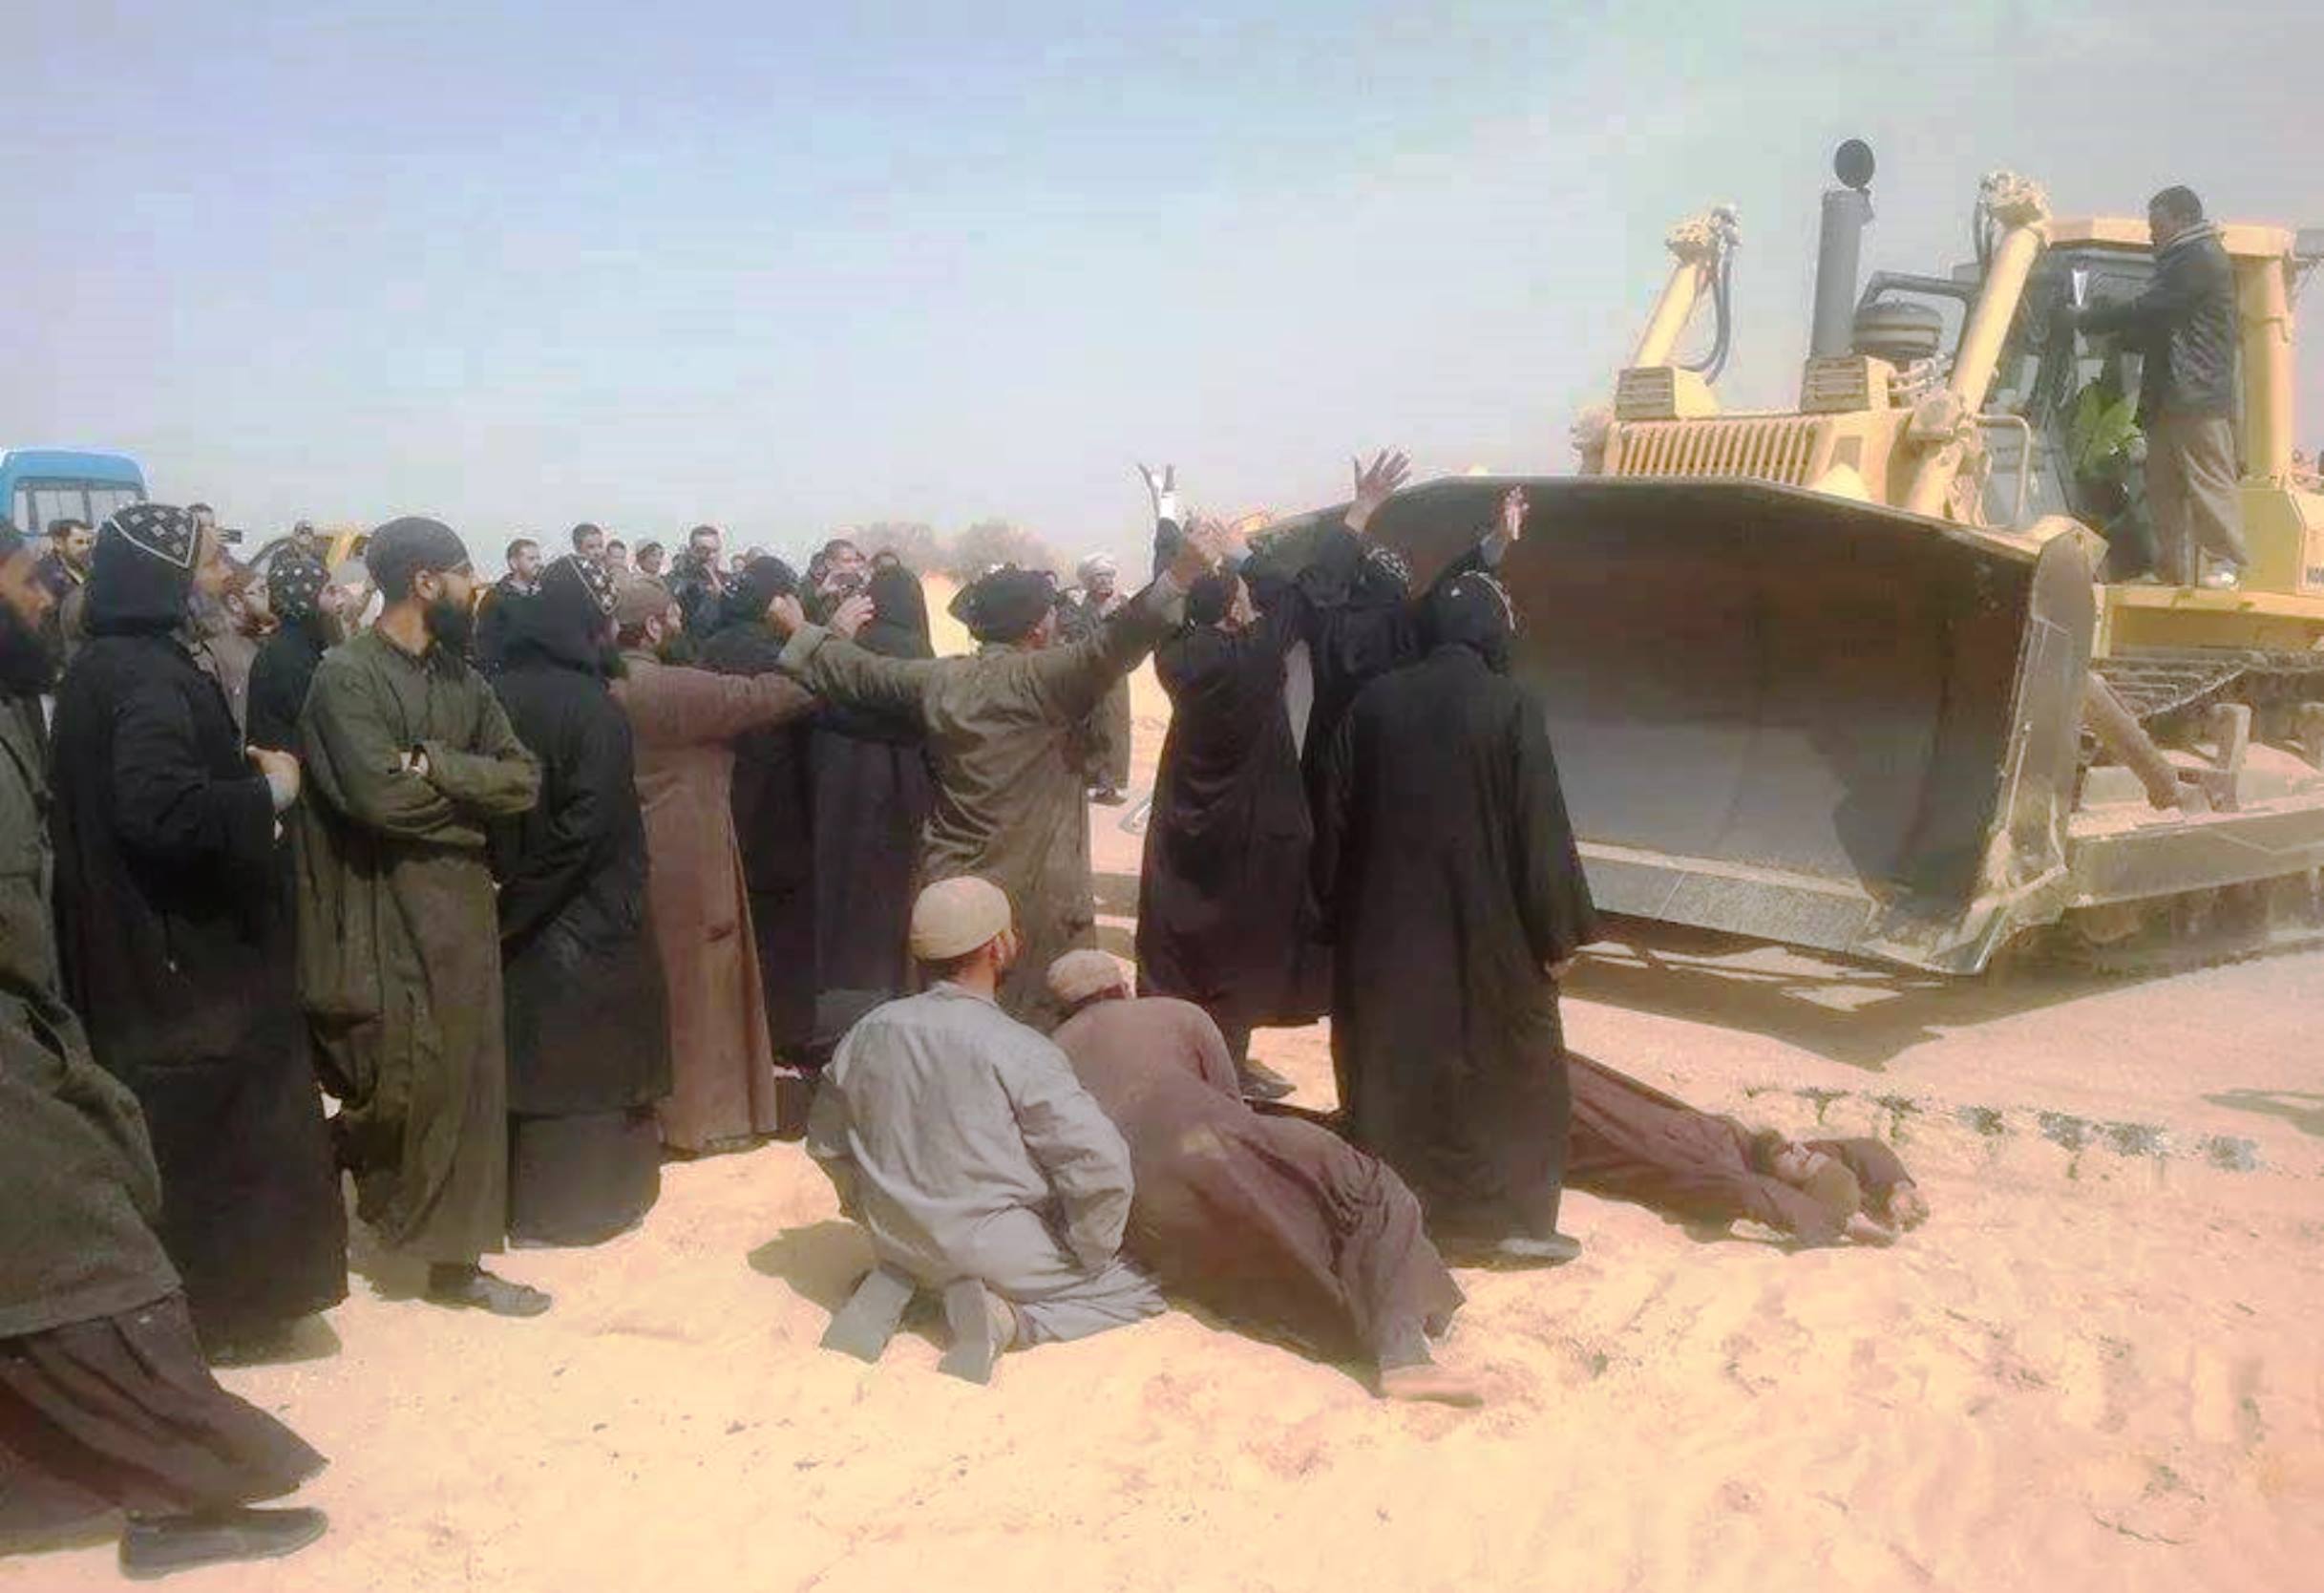 
Египет: строительство дороги угрожает монастырю св. Макария Великого